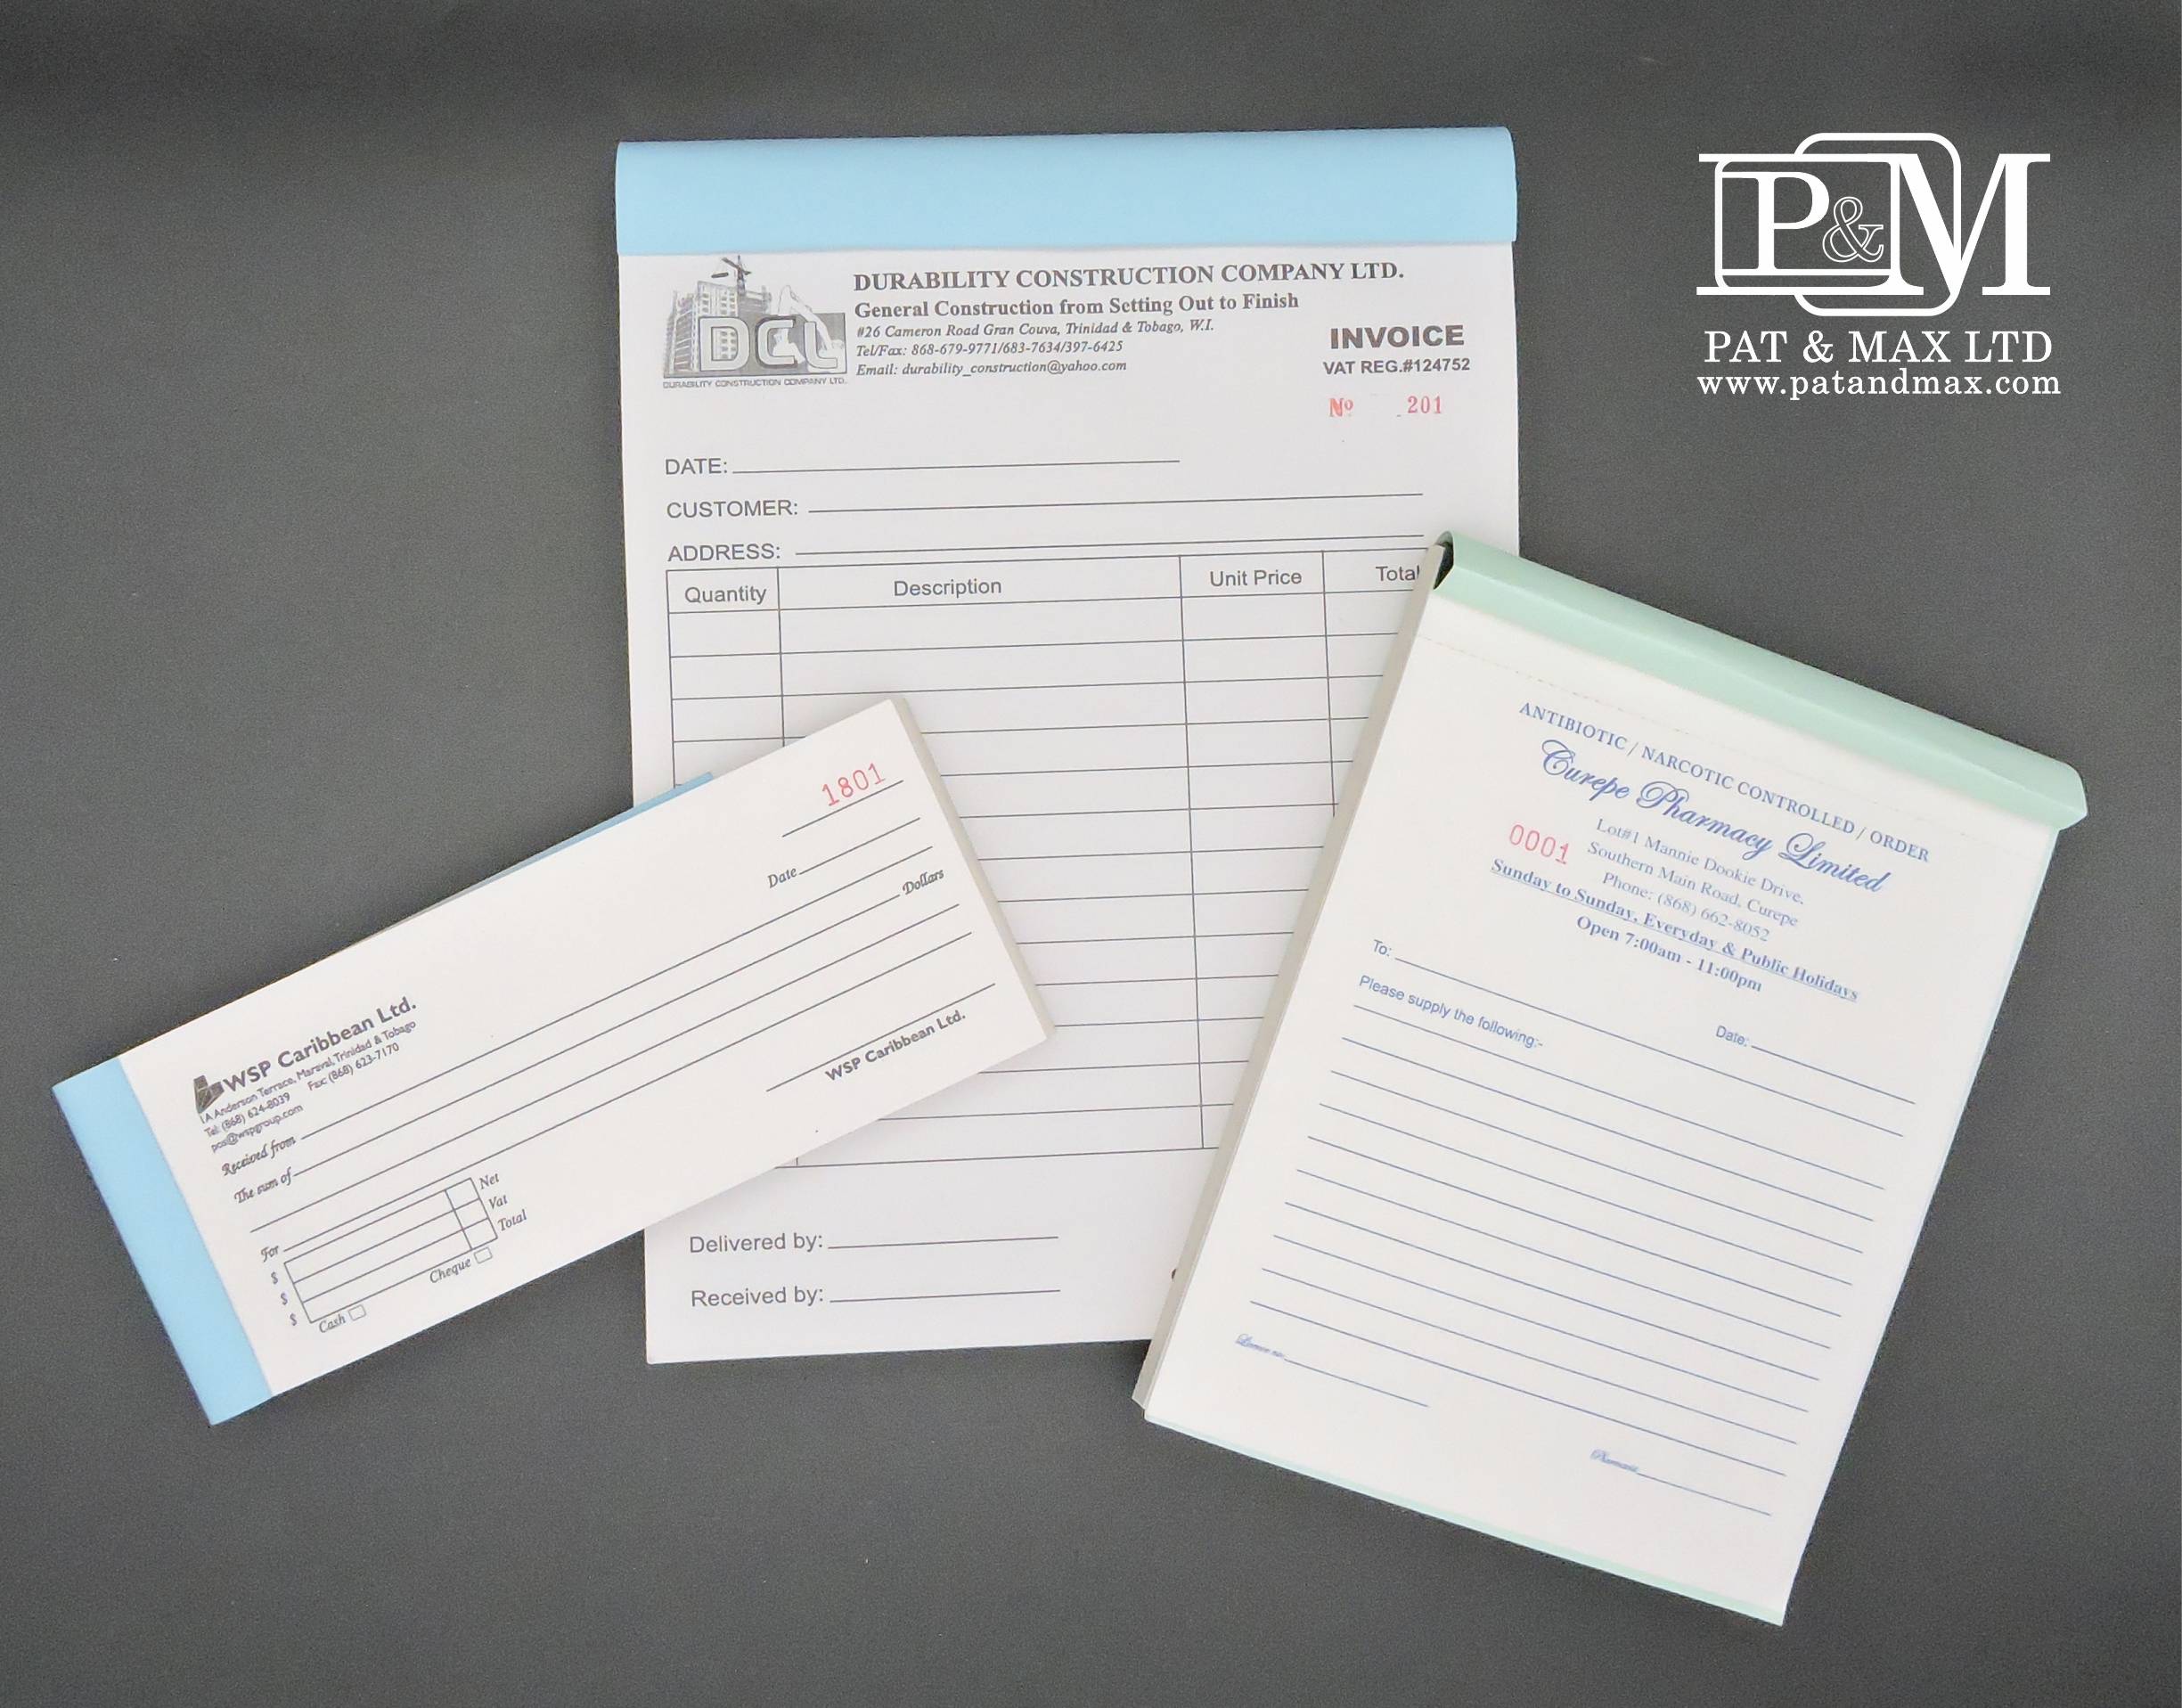 Pat & Max Ltd Plastic & ID Card Systems - PRINTERS